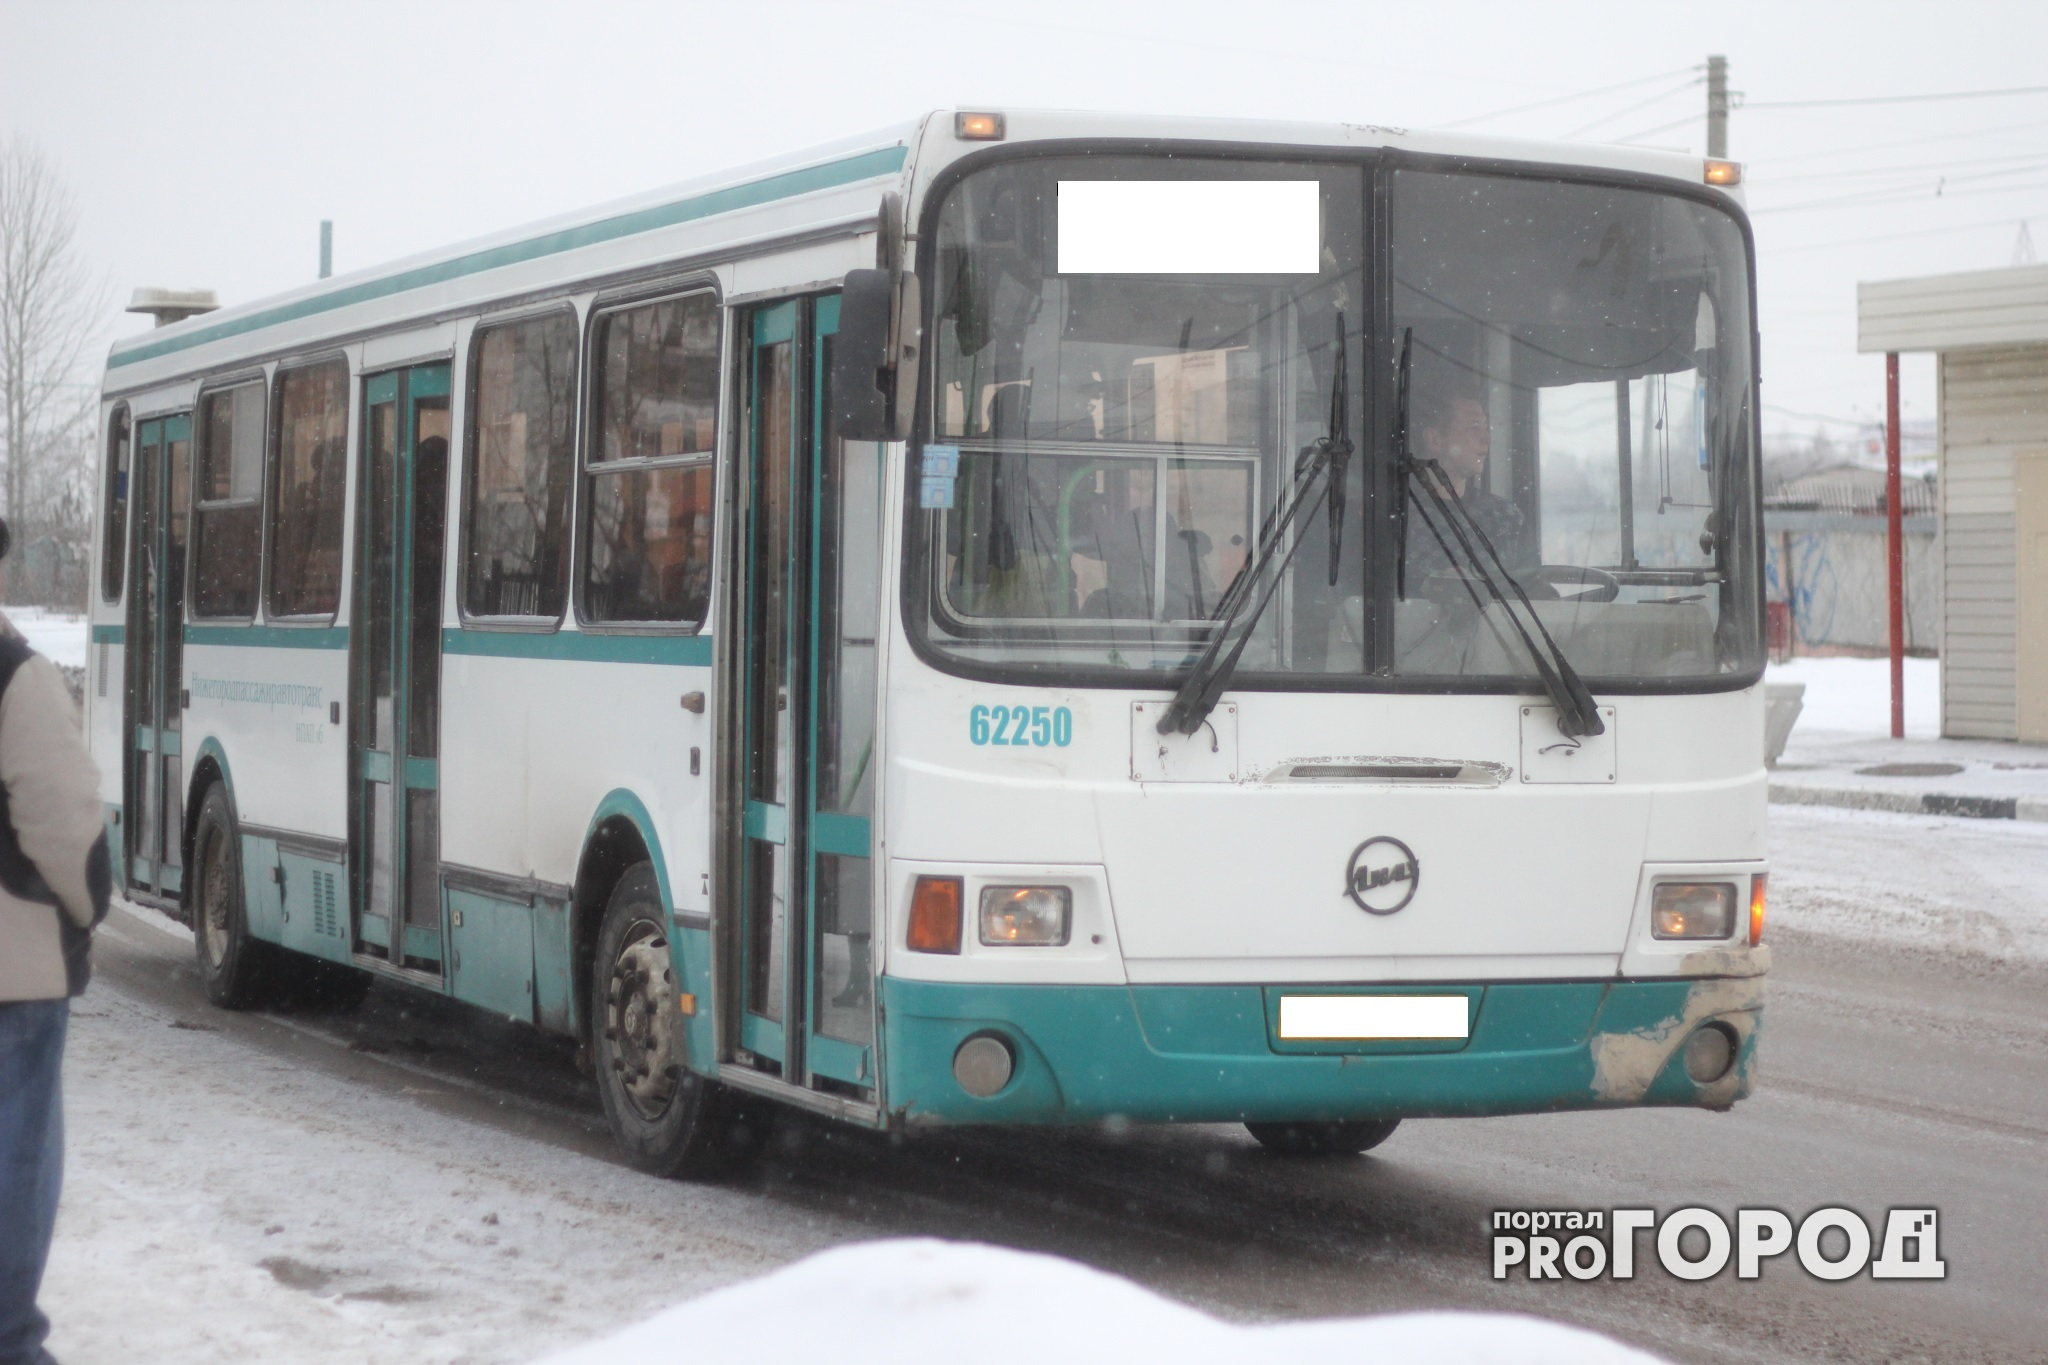 26 новых автобусов пополнили автопарк Арзамаса